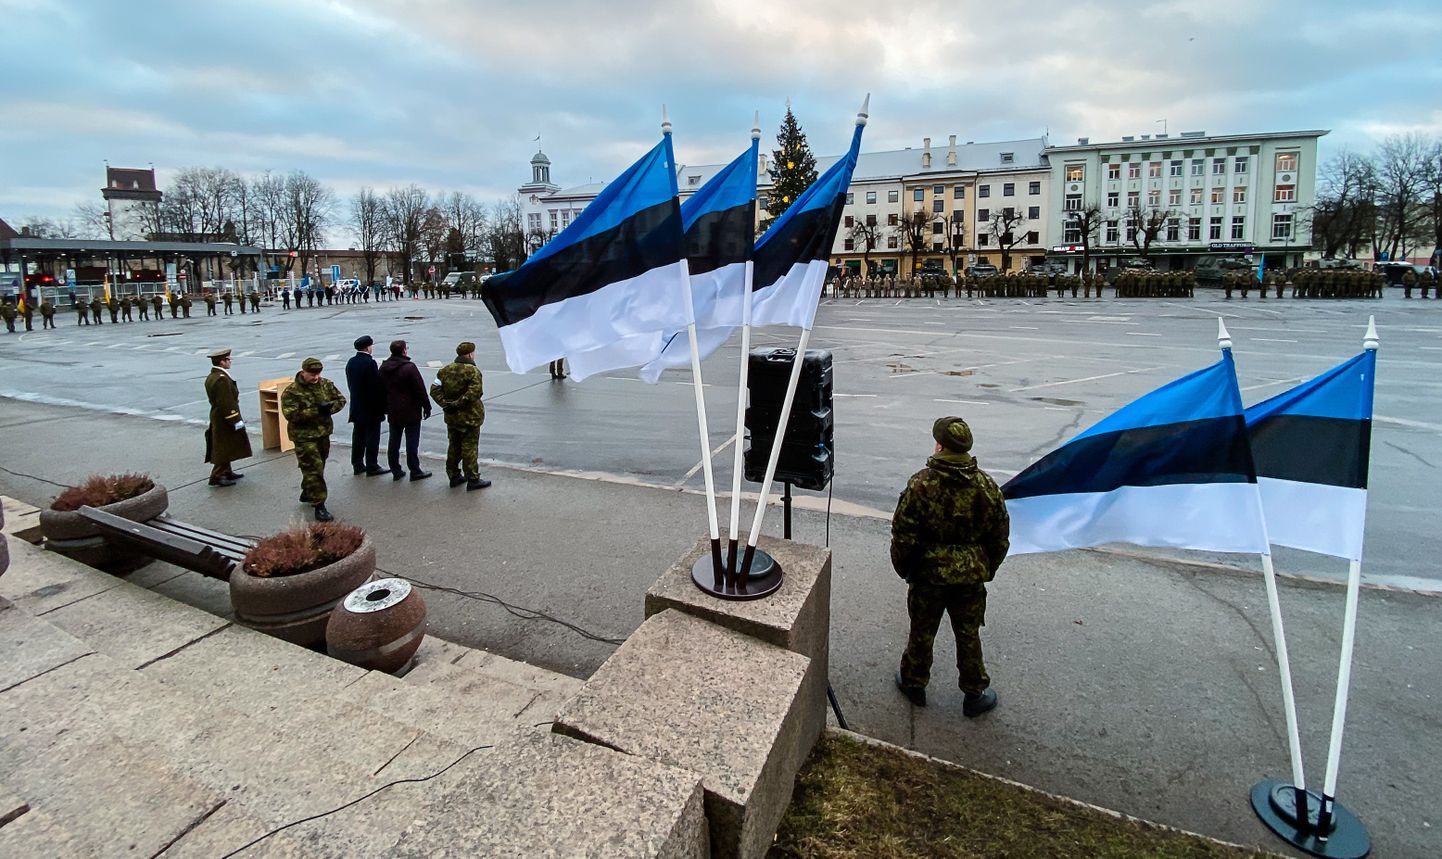 Vabadussõja relvarahu aastapäeva tähistamine Narvas Peetri platsil on saanud traditsiooniks. See pilt on tehtud aasta tagasi toimunud tseremoonial.